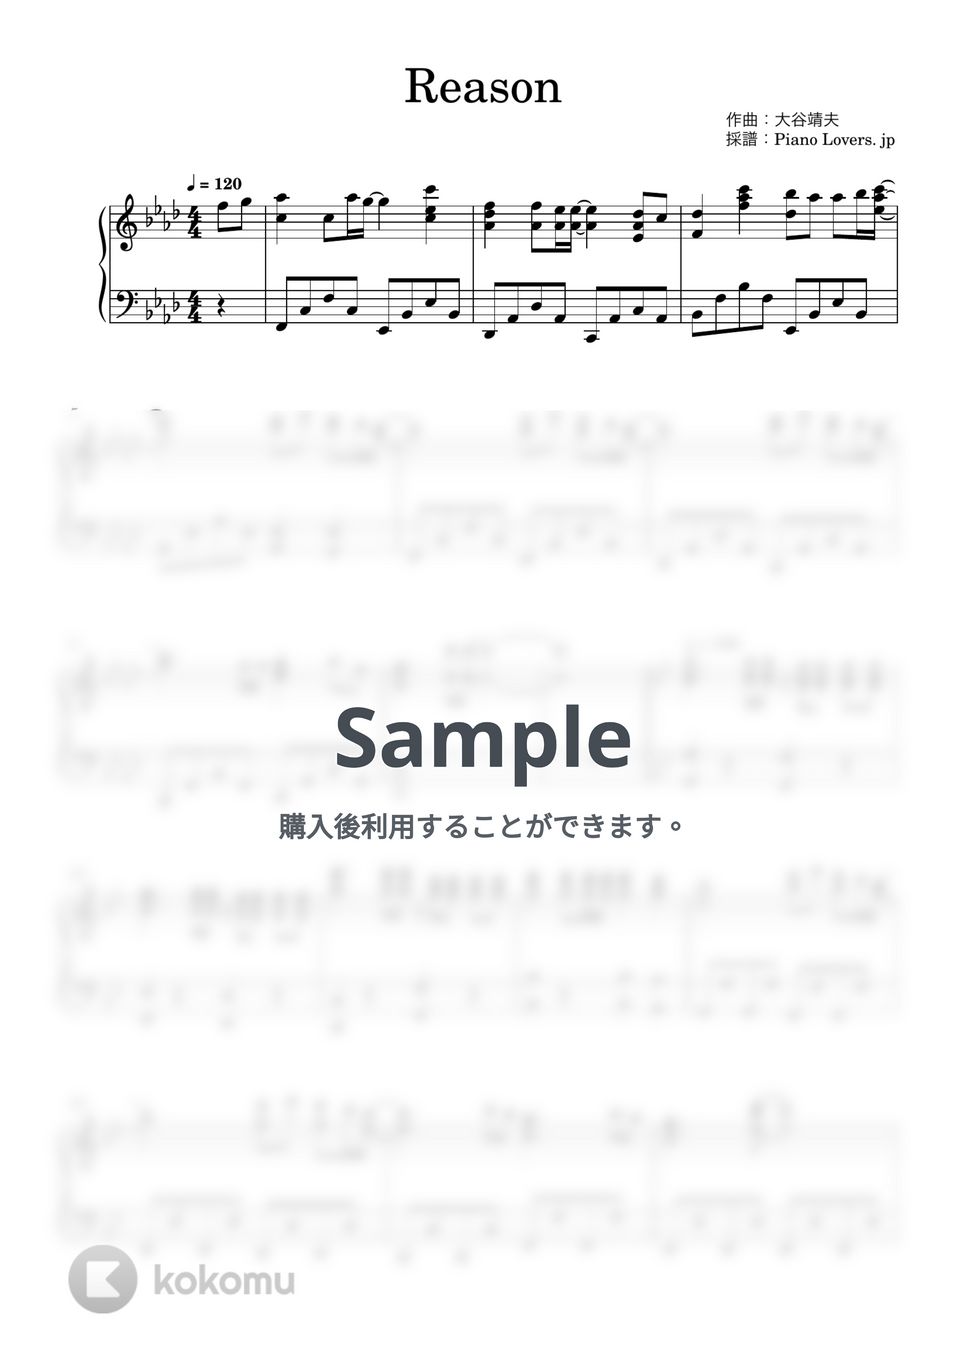 玉置成実 - Reason (機動戦士ガンダムSEED) by Piano Lovers. jp